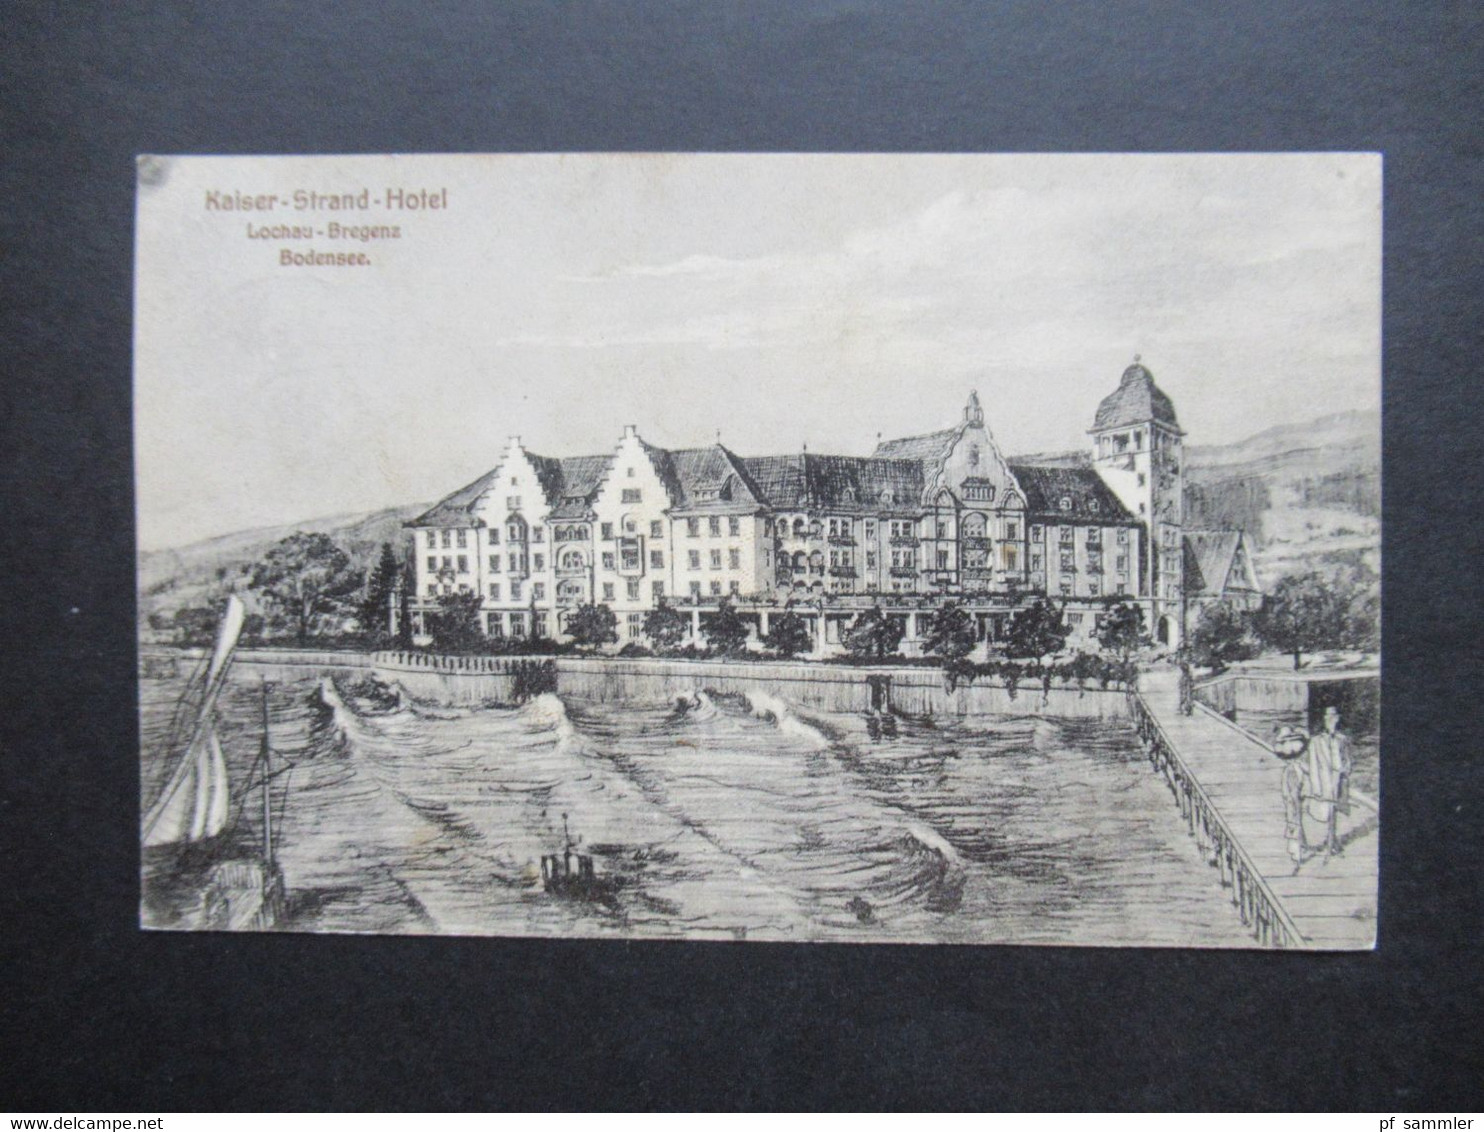 Österreich 1909 AK Kaiser Strand Hotel In Lochau Bregenz Am Bodensee. Strandhotel Mit Promenade - Hotels & Gaststätten